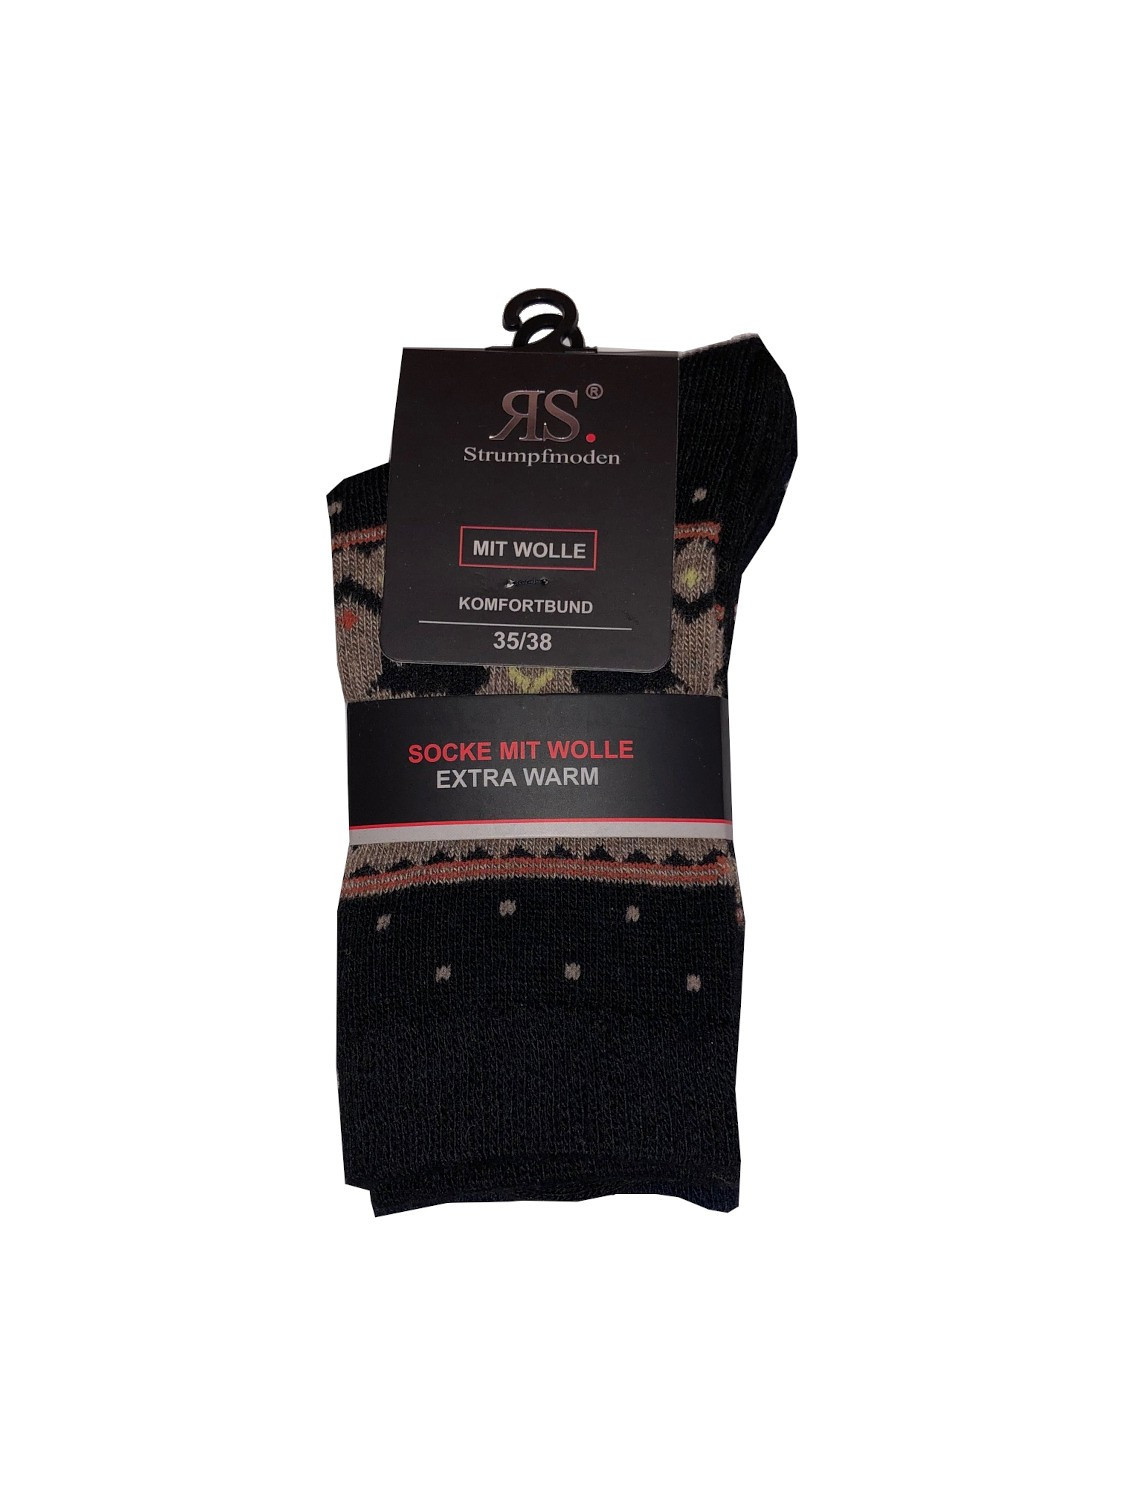 Ponožky RiSocks 43356 Mit Wolle Komfortbund vzor 35-46 A'2 námořnická modř-černá 35-38